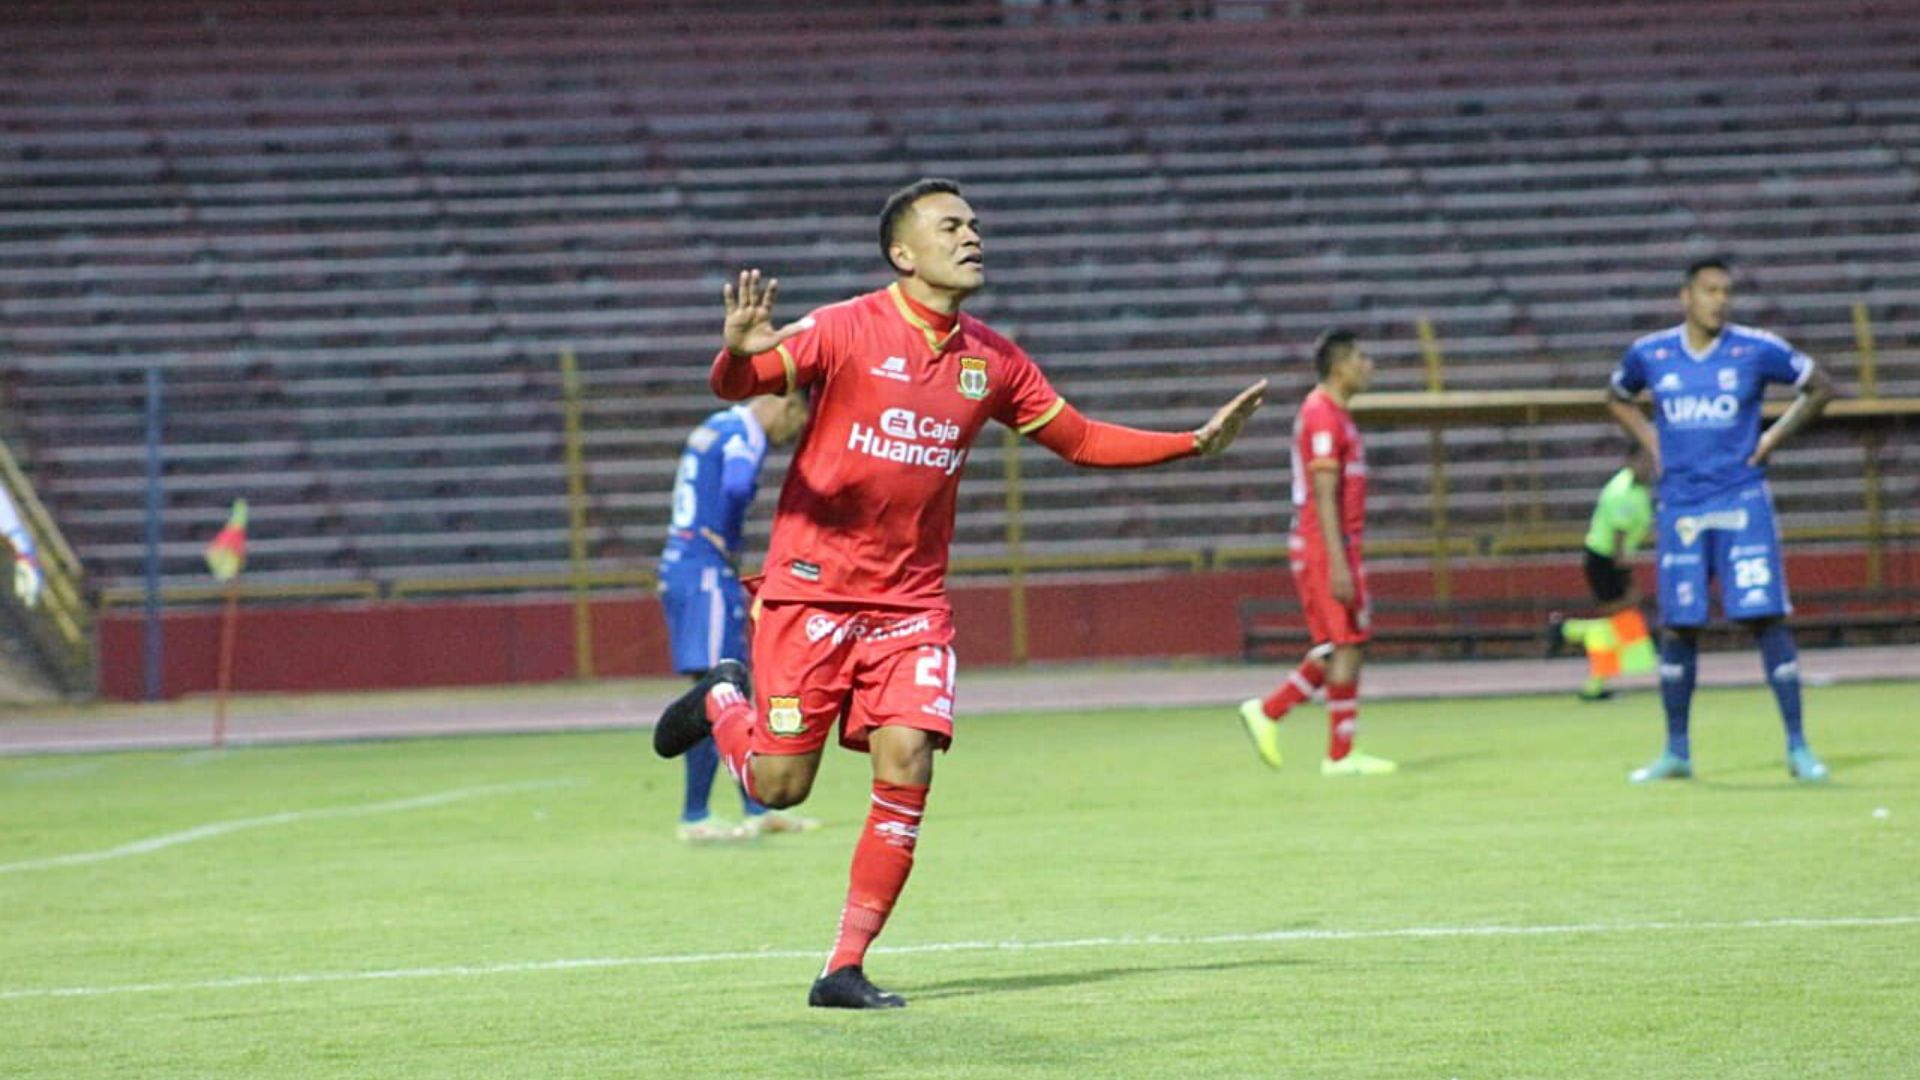 Luis Benites de Sport Huancayo analizó el duelo ante Alianza Lima: “Nos enfocamos en robar puntos fuera de casa”